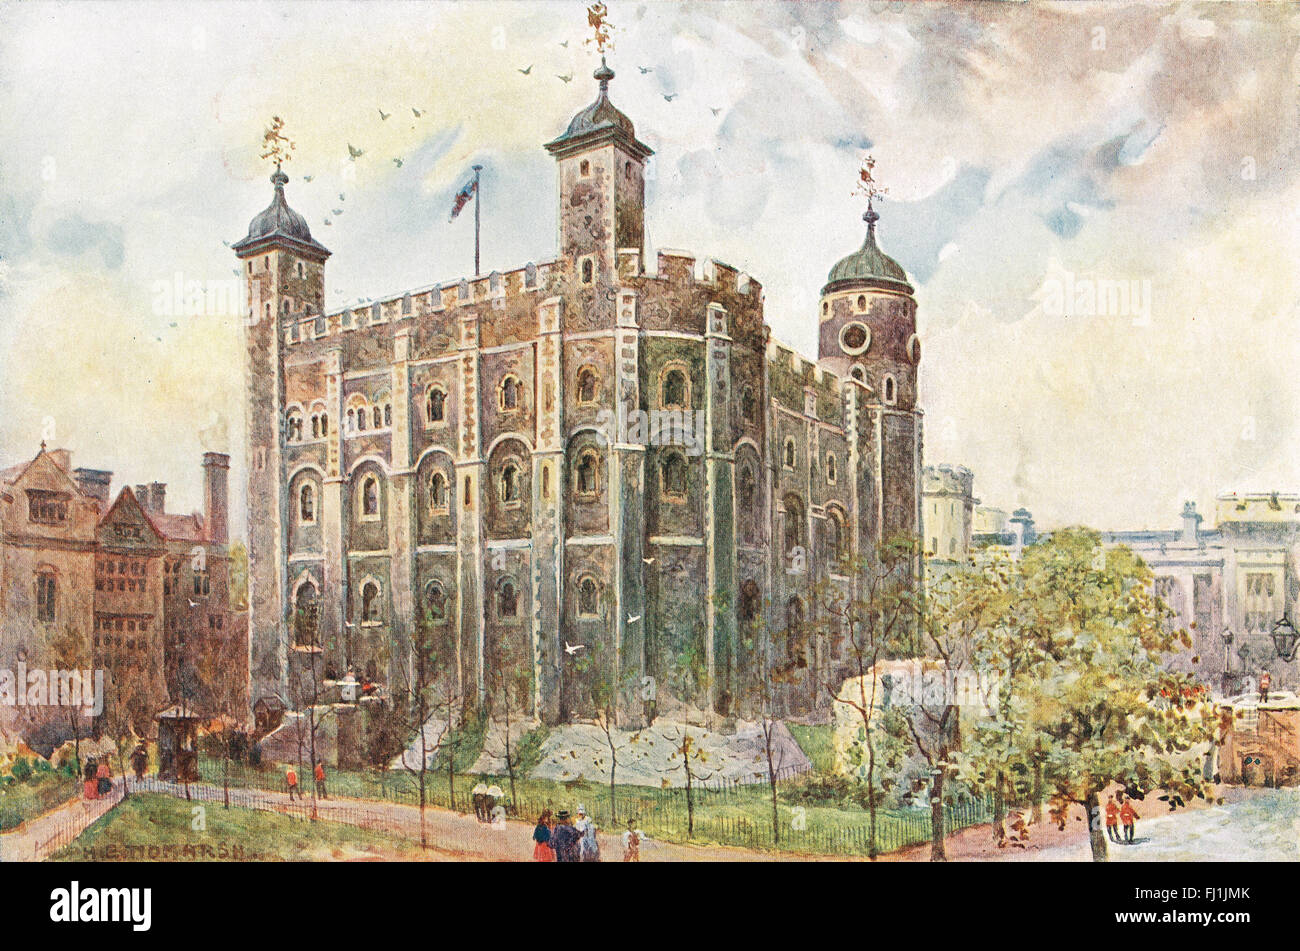 La Tour Blanche, la Tour de Londres vieille illustration Banque D'Images